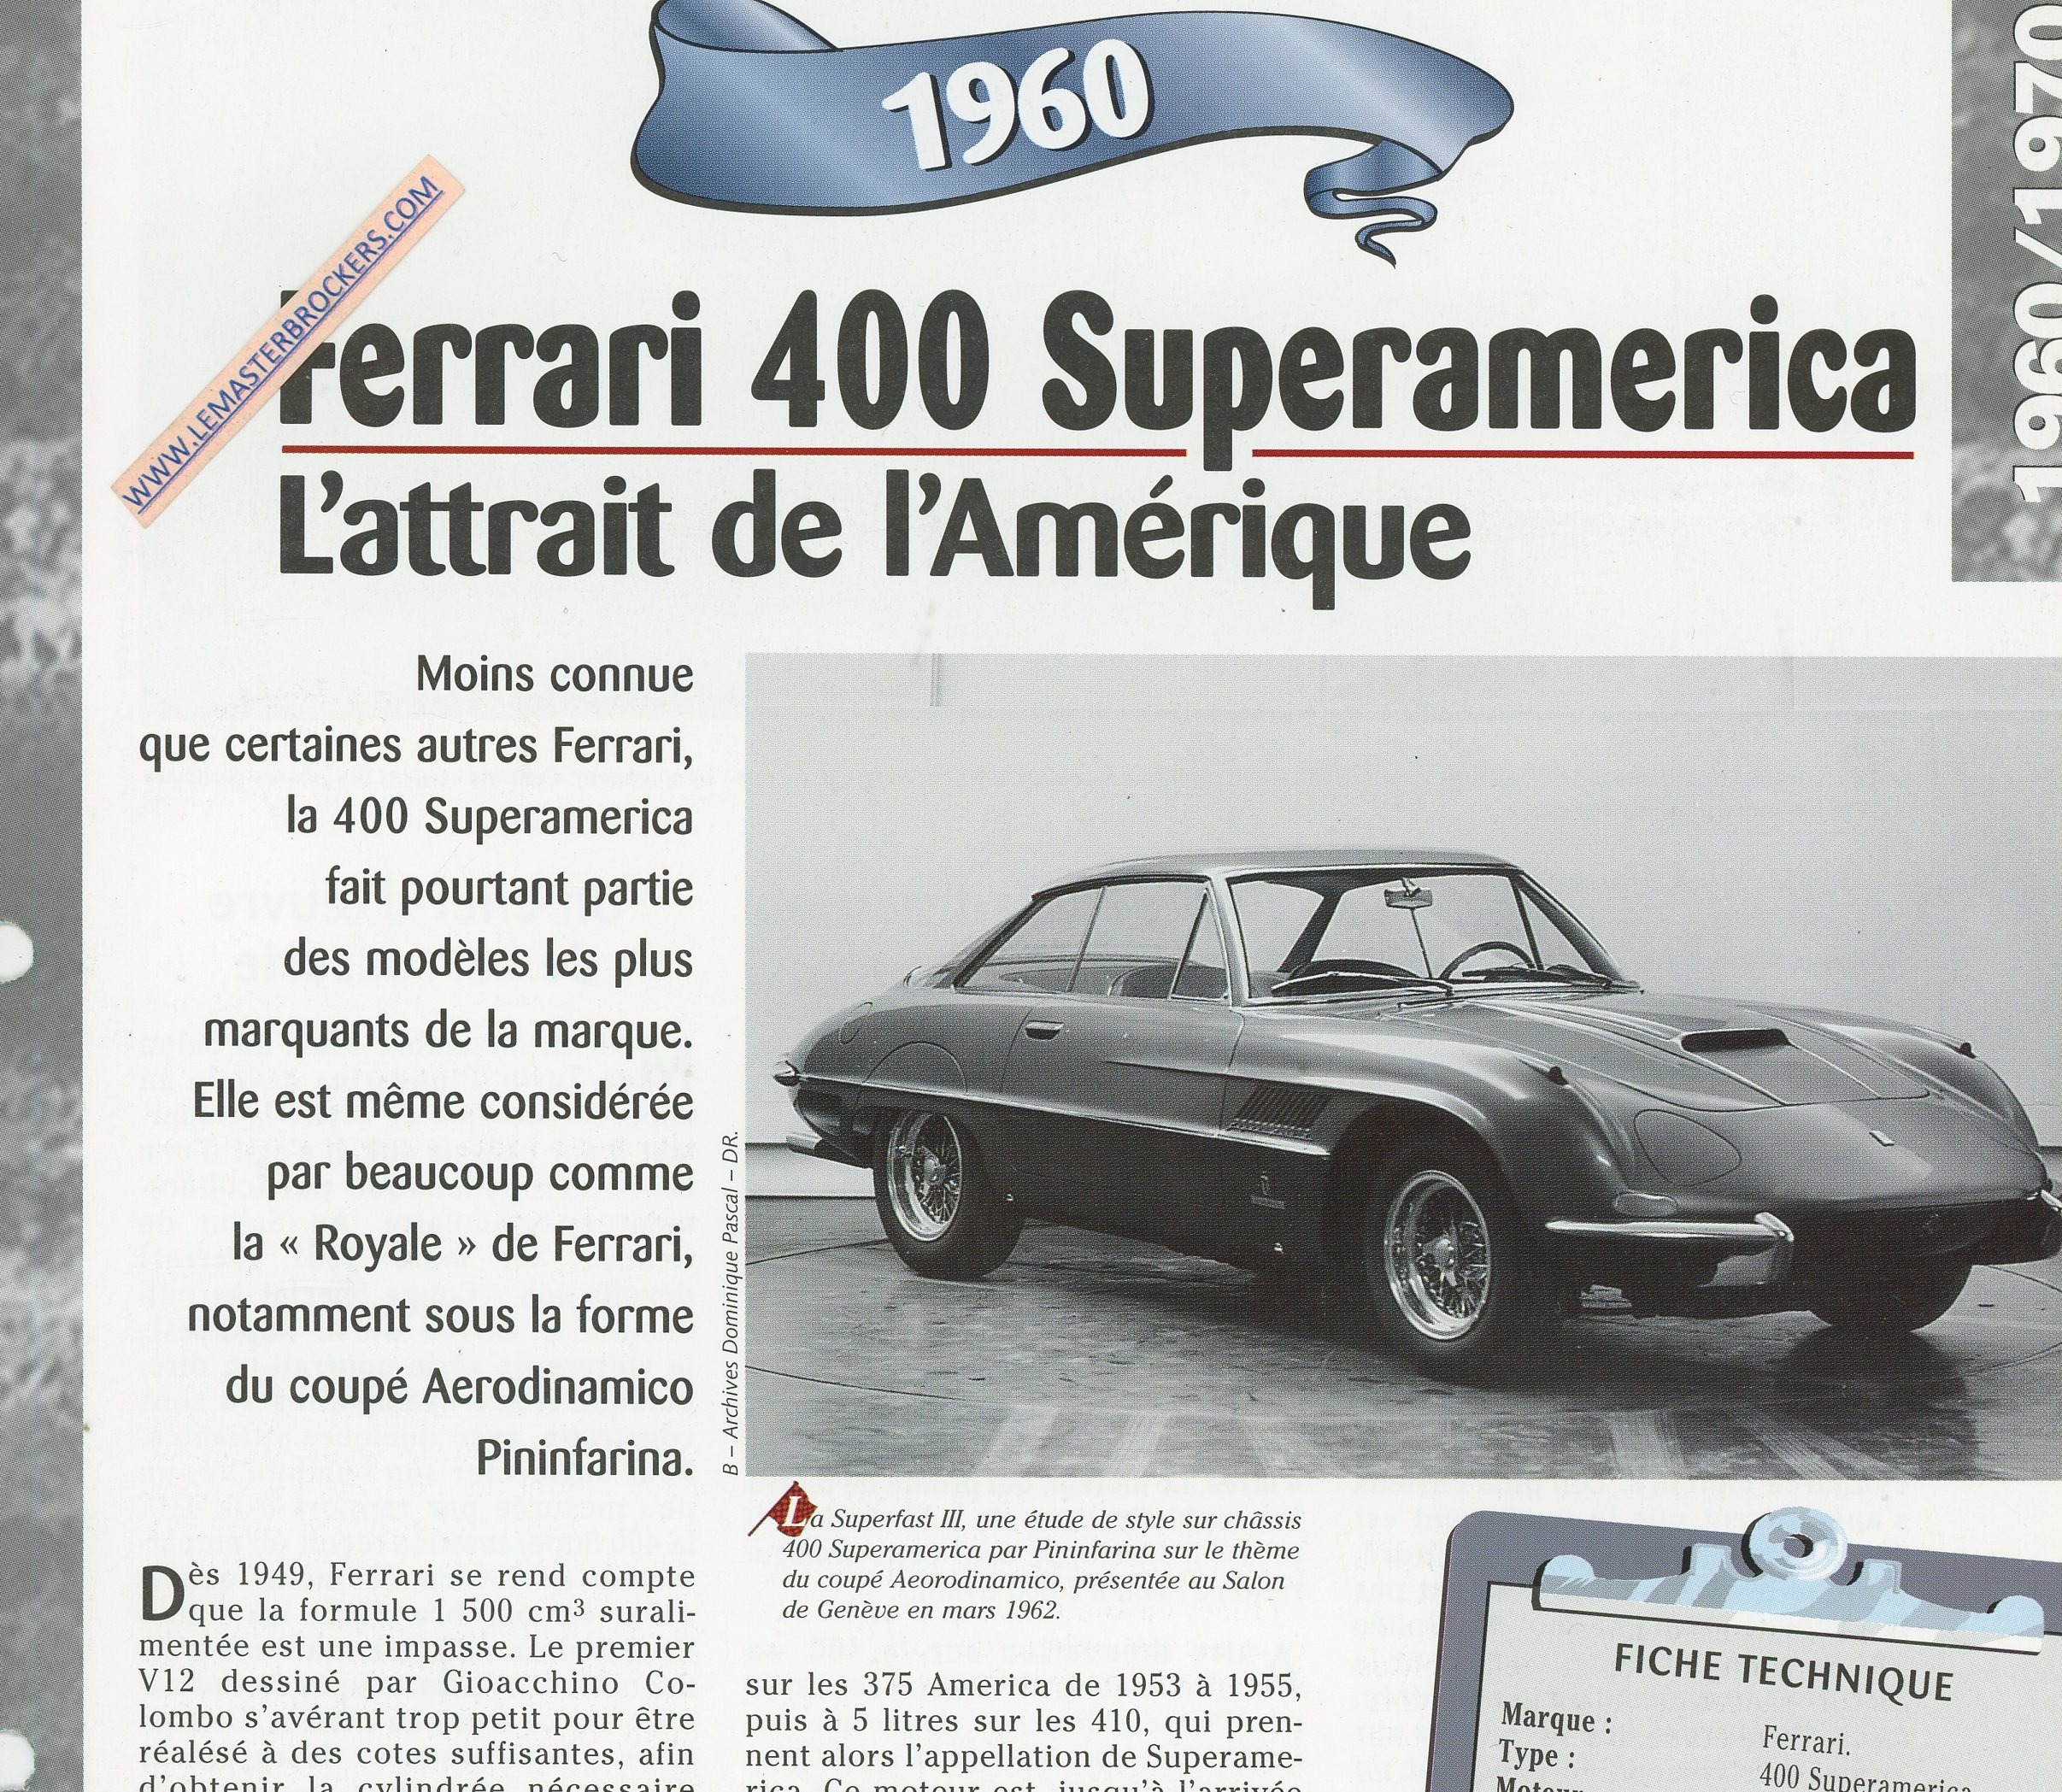 FERRAR-400-SUPERAMERICA-1960-FICHE-TECHNIQUE-LEMASTERBROCKERS-CARS-CARD